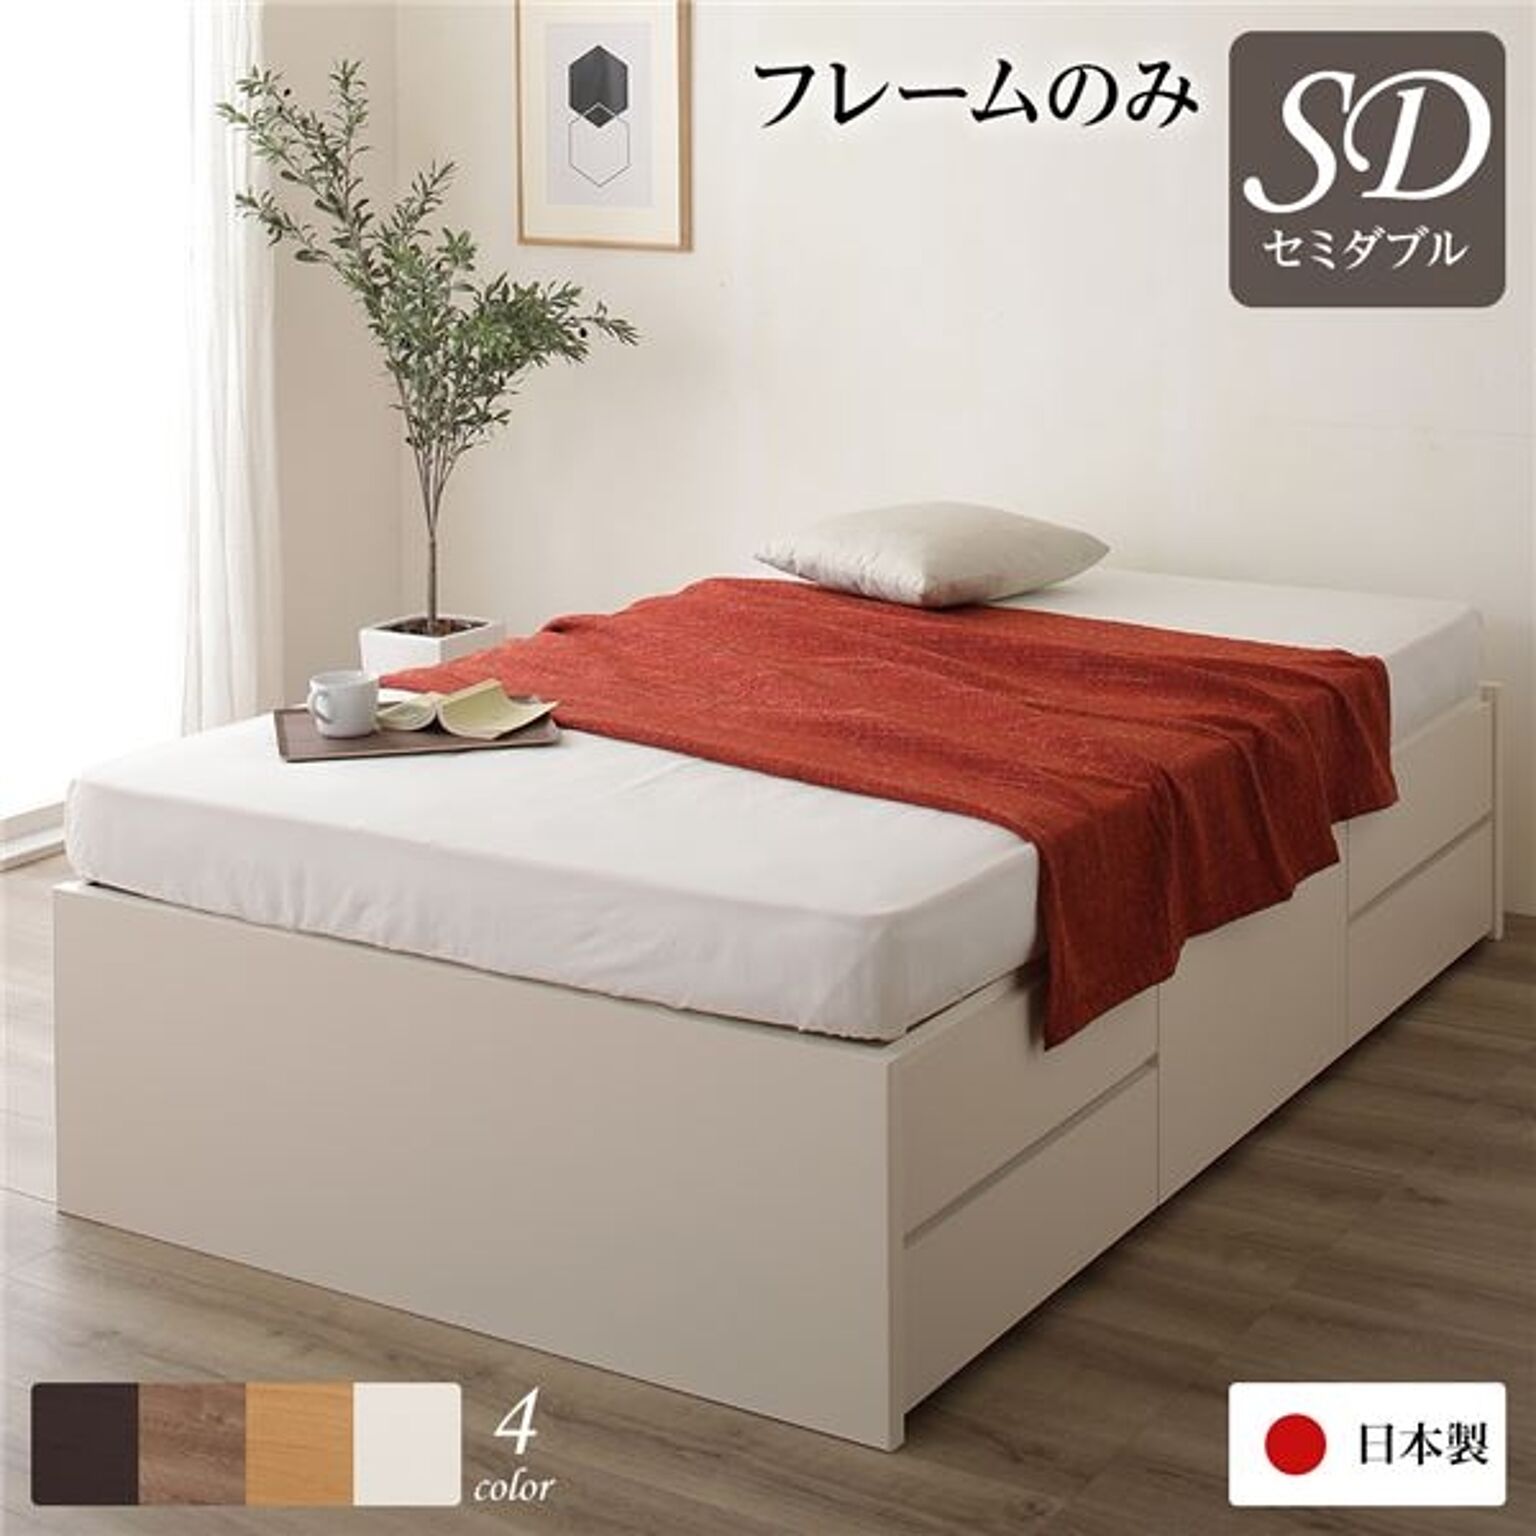 日本製 収納ベッド セミダブル ヘッドレス 通常丈 フレームのみ アイボリー 引き出し収納 頑丈ボックス収納